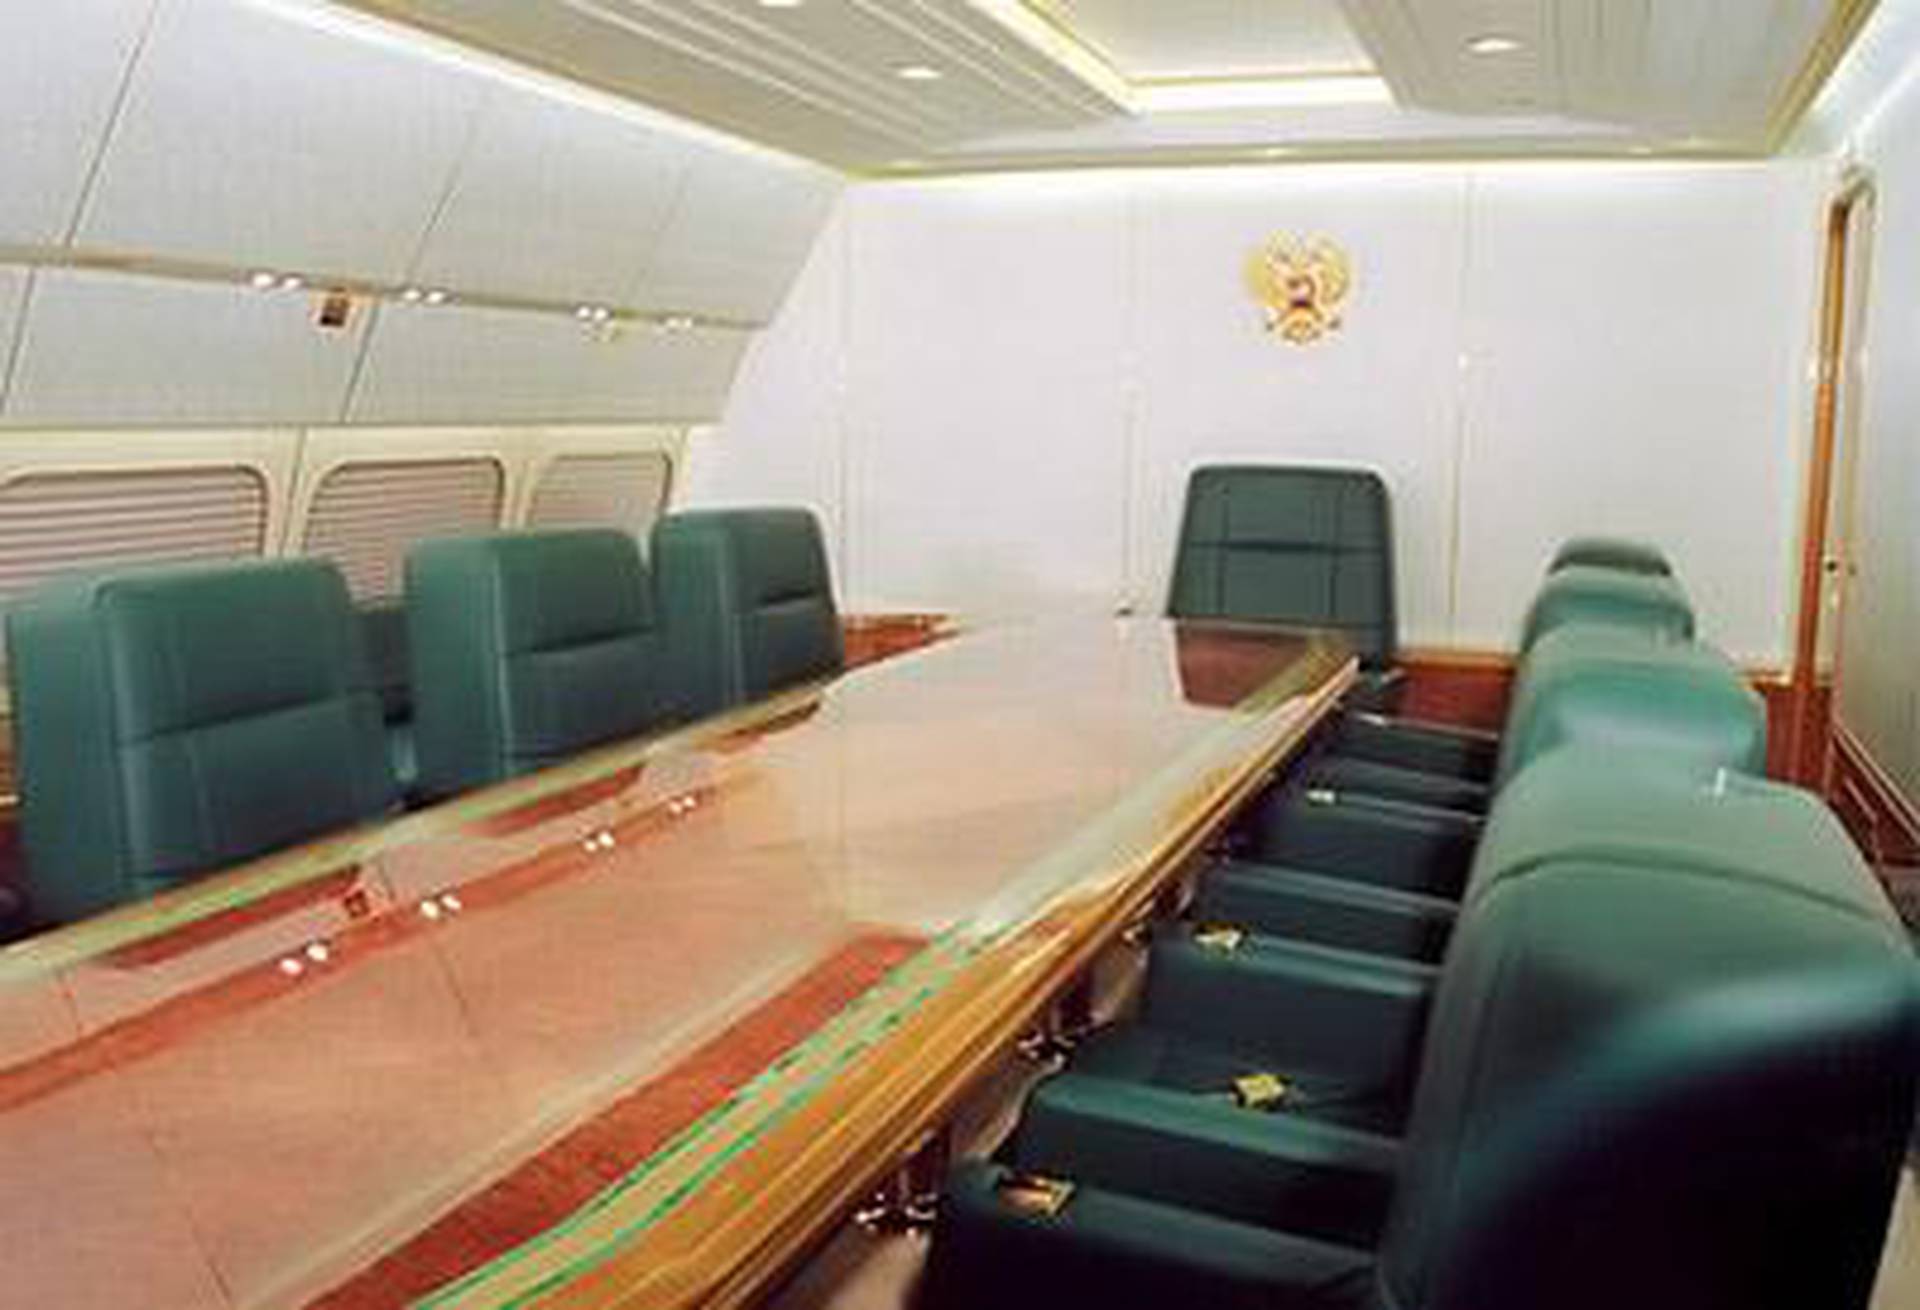 Президентский самолет. Ил-96 президентский борт. Ил-96-300 президентский салон. Президентский самолет Путина ил-96 изнутри. Ил-96 президентский борт салон.